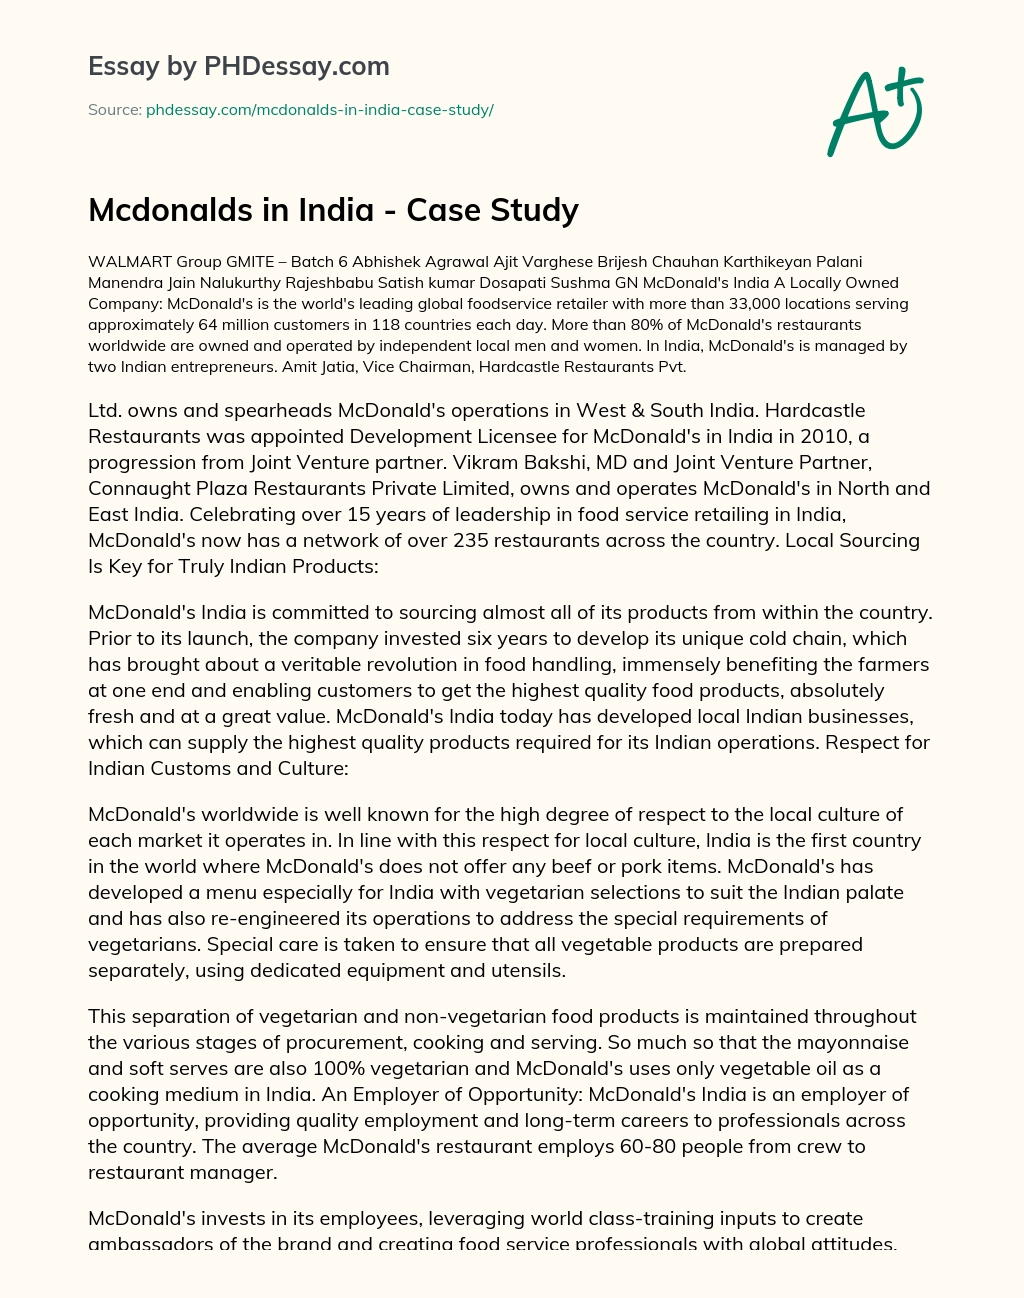 Mcdonalds in India – Case Study essay